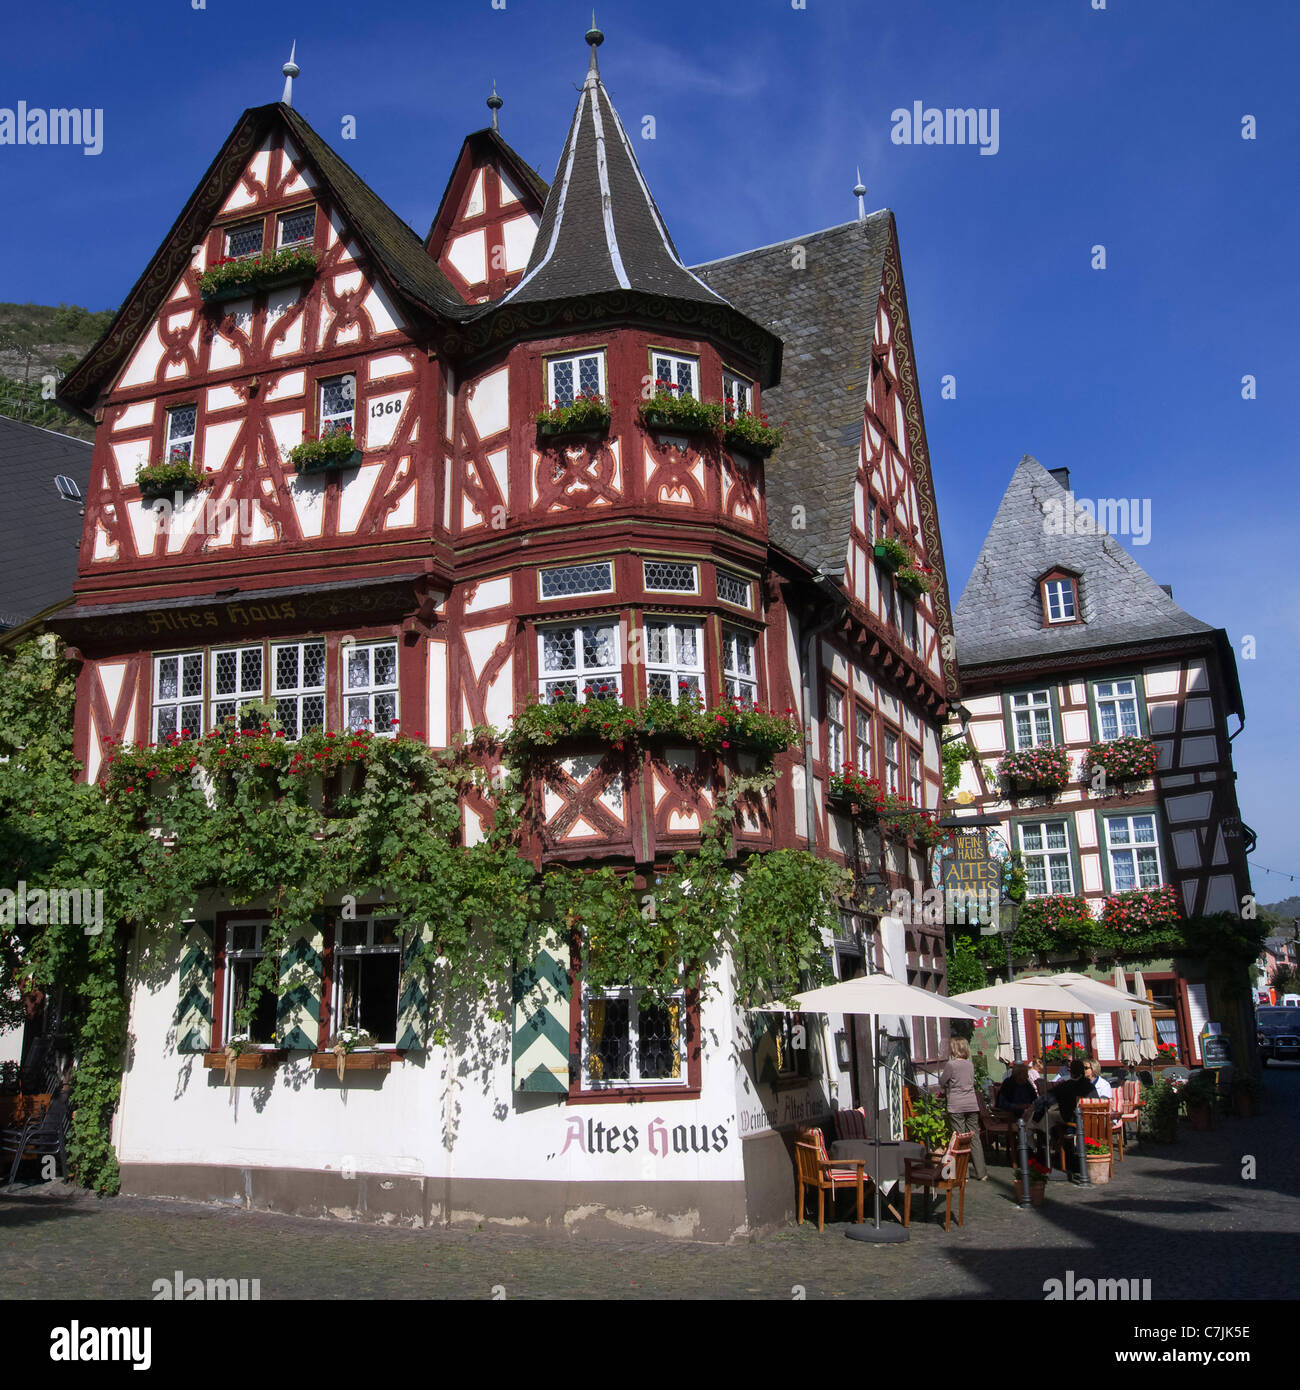 Vecchio altes Haus a struttura mista in legno e muratura storico edificio a Bacharach in Renania sul fiume Reno Germania Foto Stock